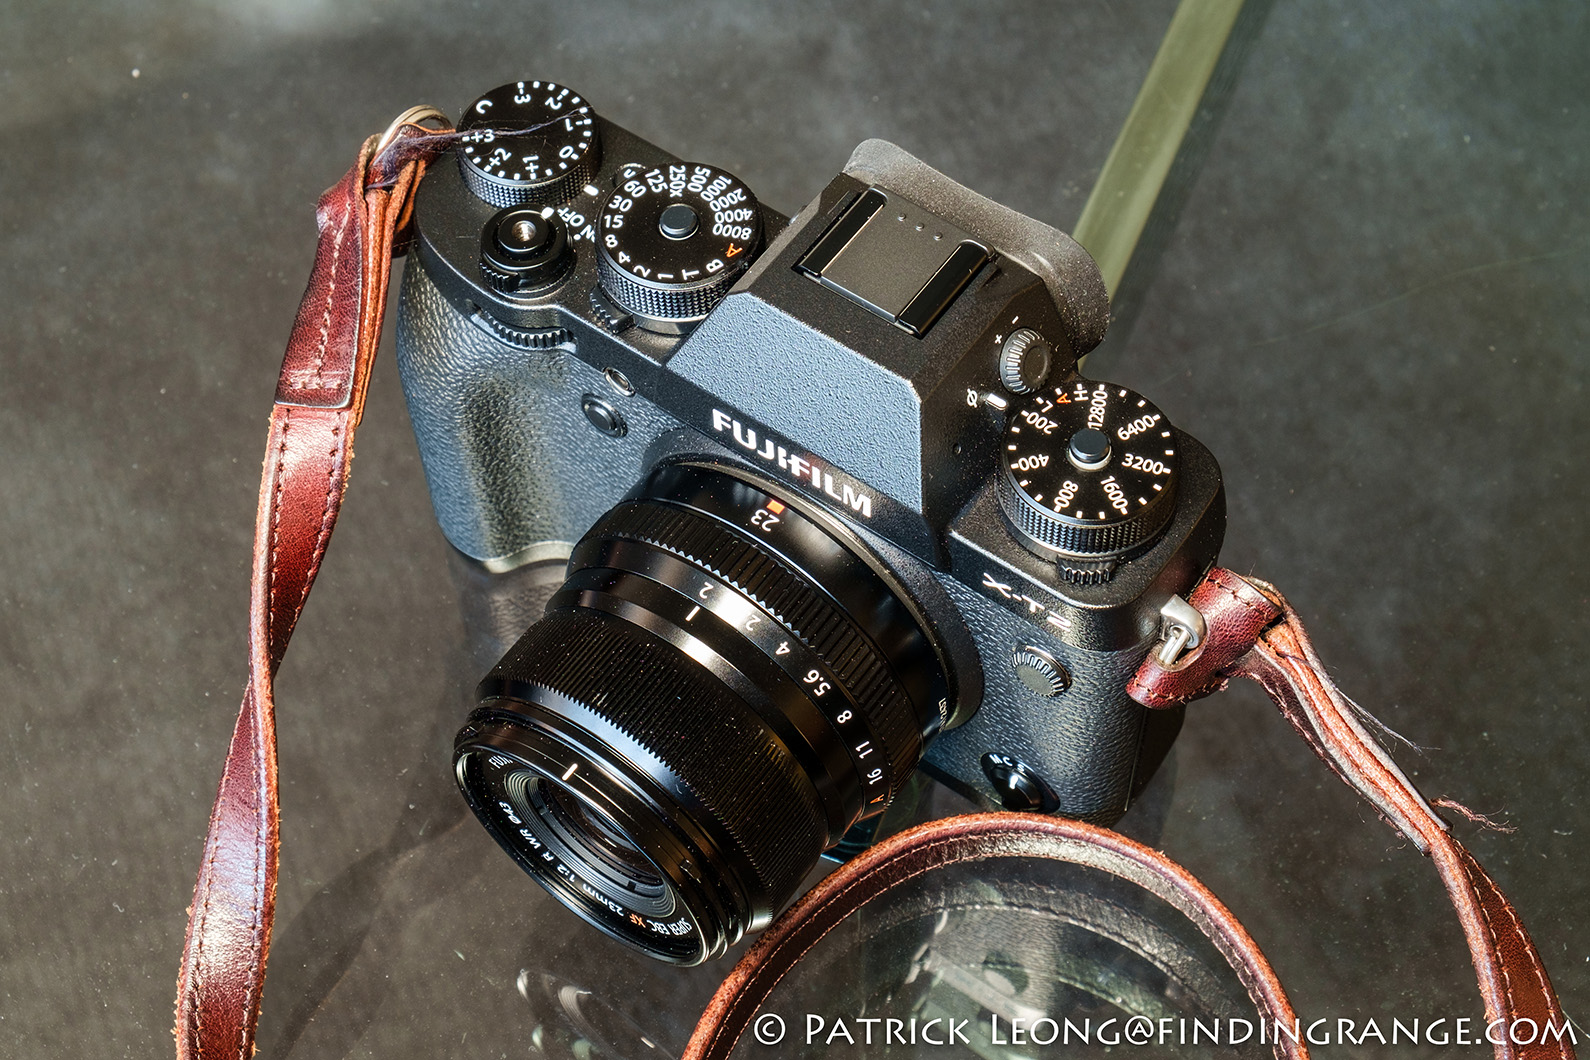 Fujifilm XF 23mm f2 R WR Lens First Impressions